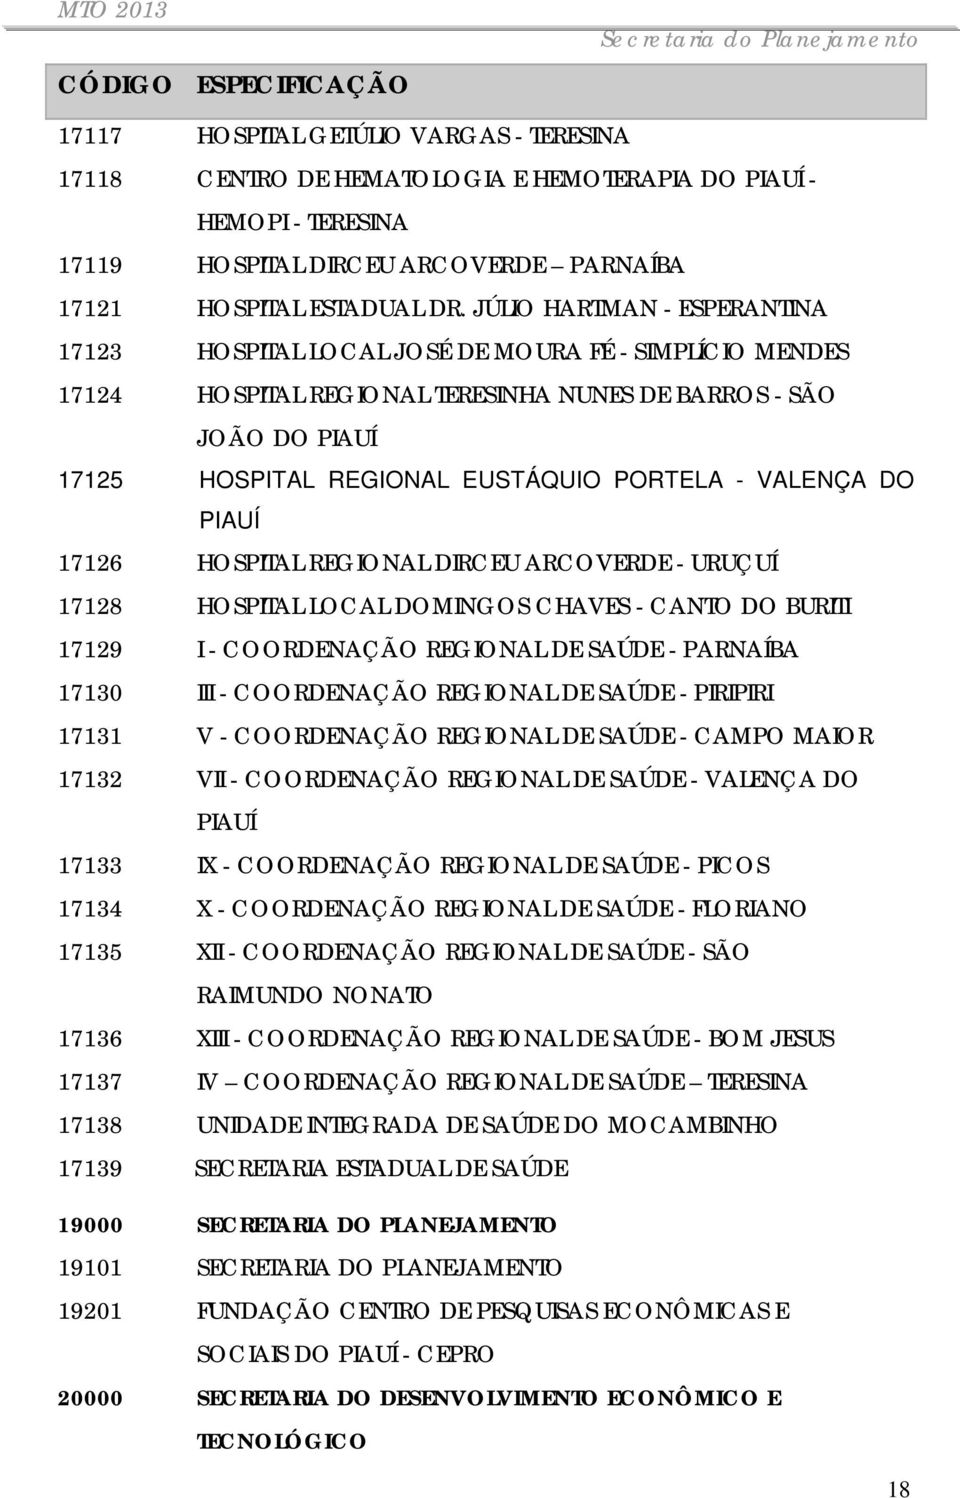 PORTELA - VALENÇA DO PIAUÍ 17126 HOSPITAL REGIONAL DIRCEU ARCOVERDE - URUÇUÍ 17128 HOSPITAL LOCAL DOMINGOS CHAVES - CANTO DO BURITI 17129 I - COORDENAÇÃO REGIONAL DE SAÚDE - PARNAÍBA 17130 III -